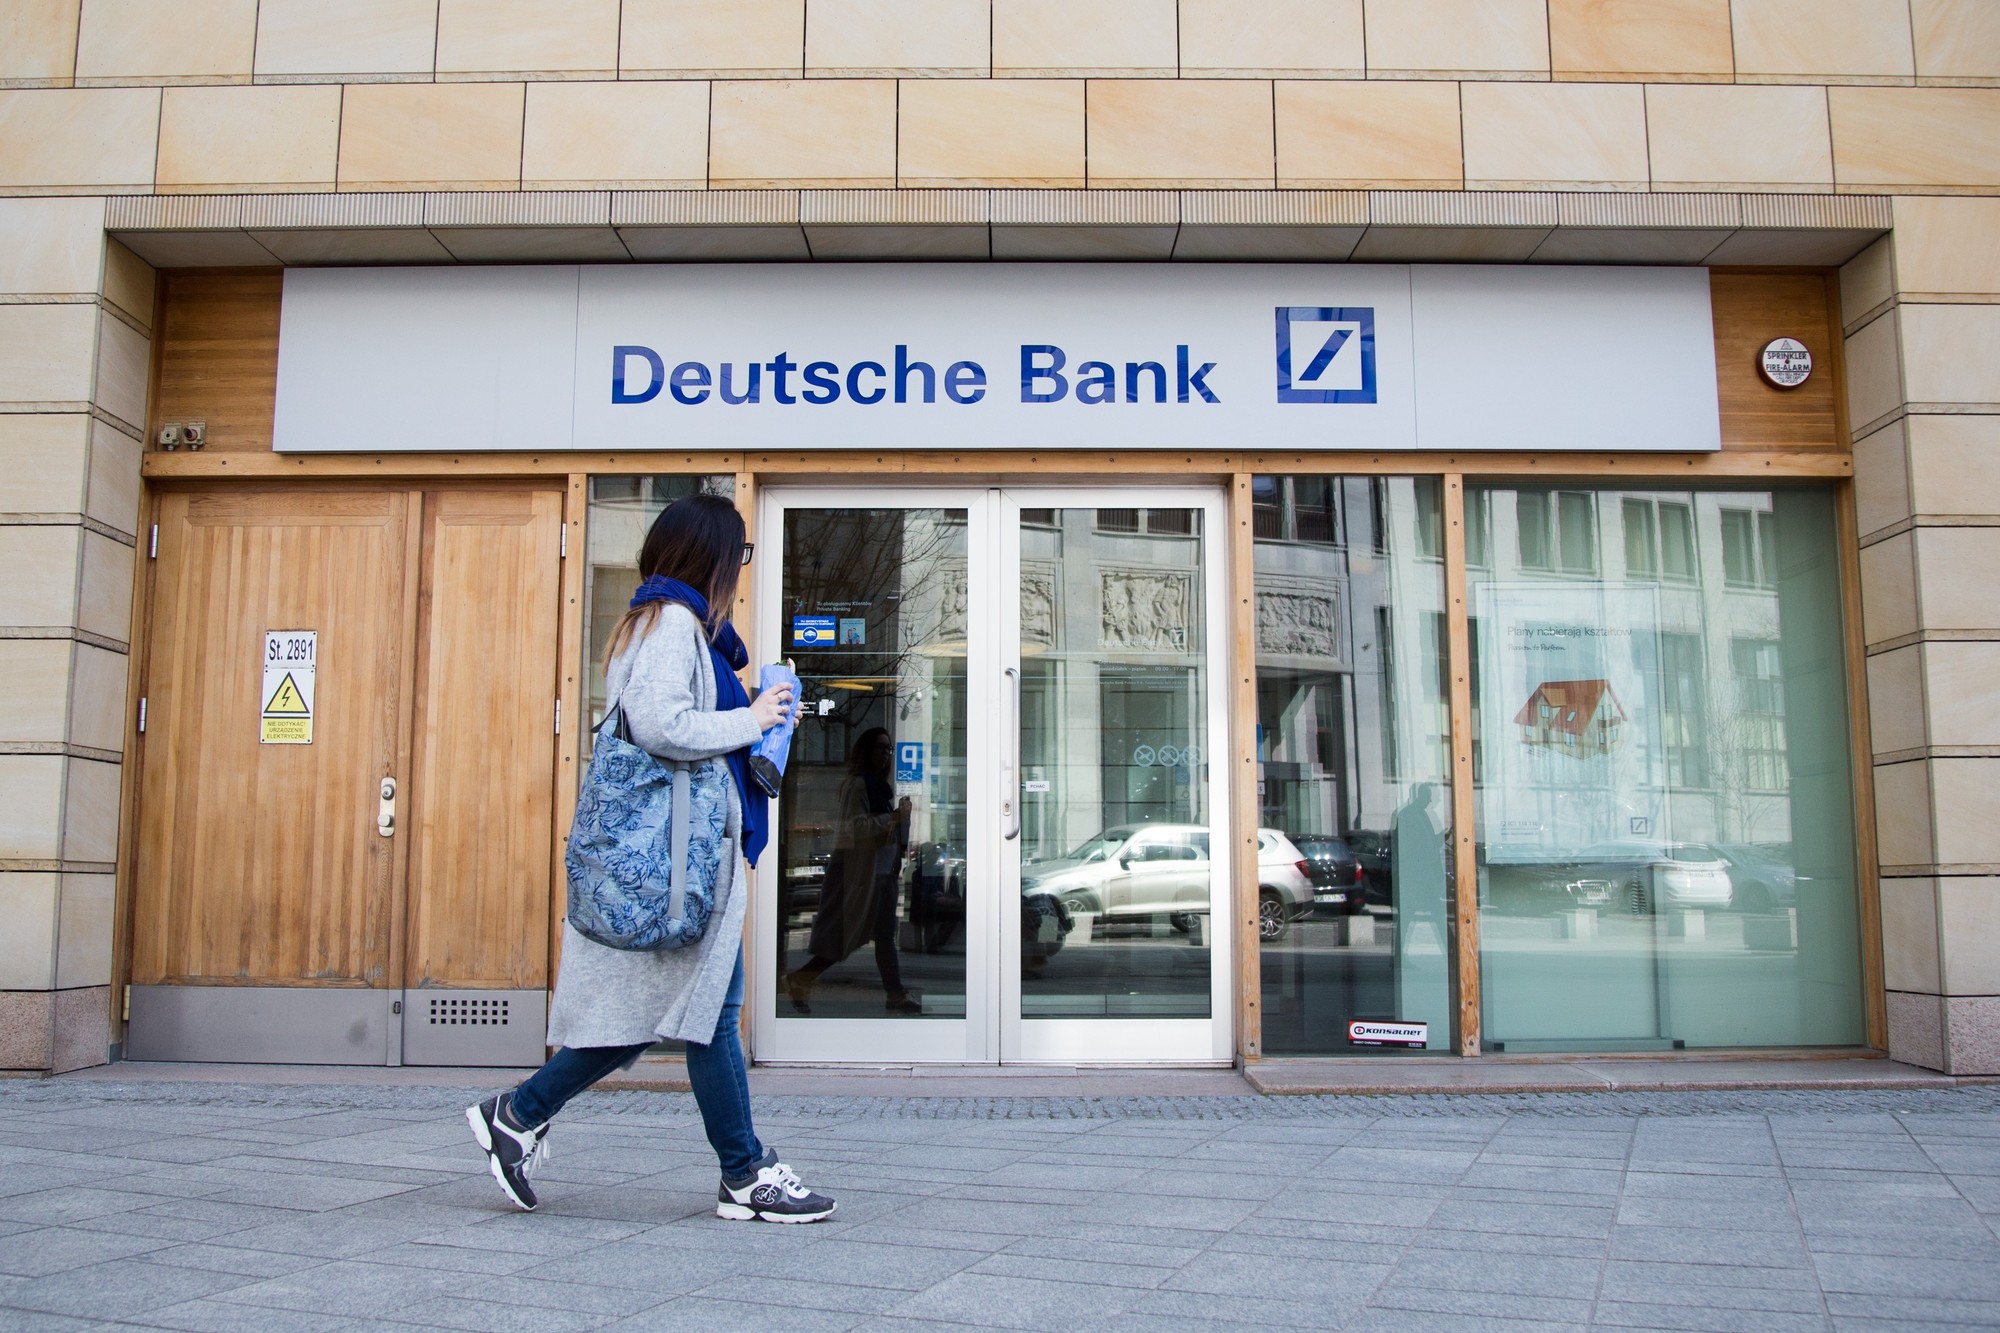 Deutsche Bank zostanie sprzedany - co się stanie z klientami DB?